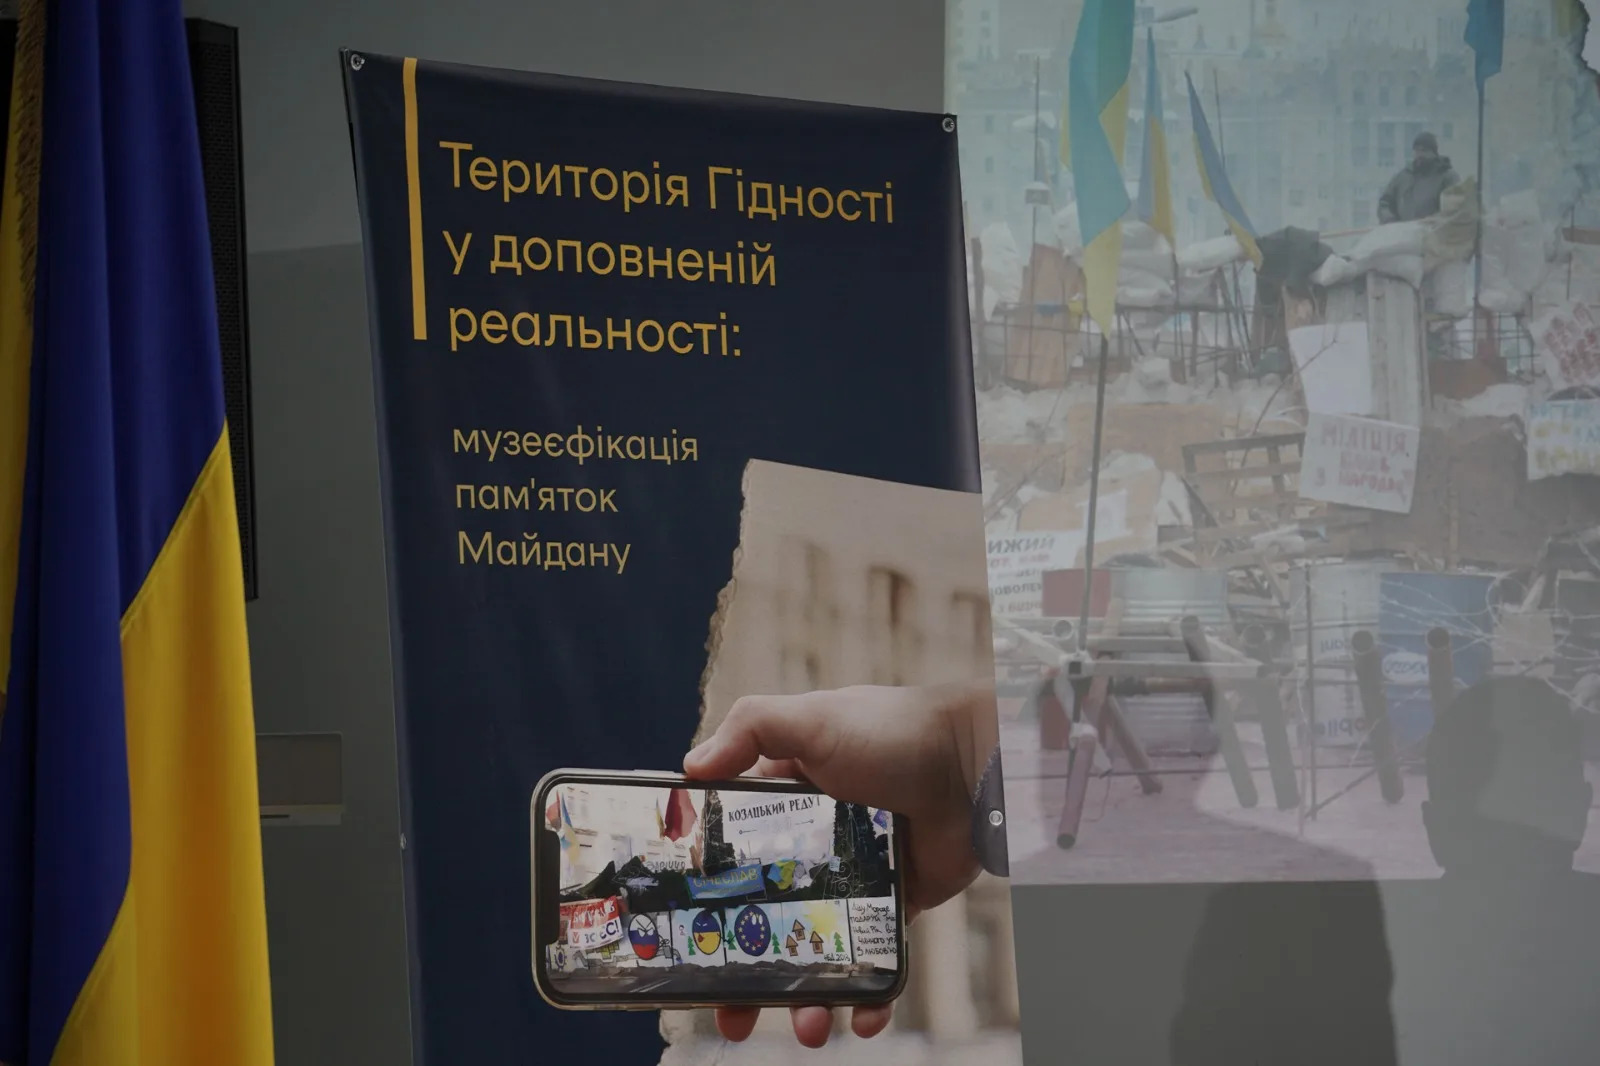 проєкт "Територія Гідності у доповненій реальності: музеєфікація пам’яток Майдану"